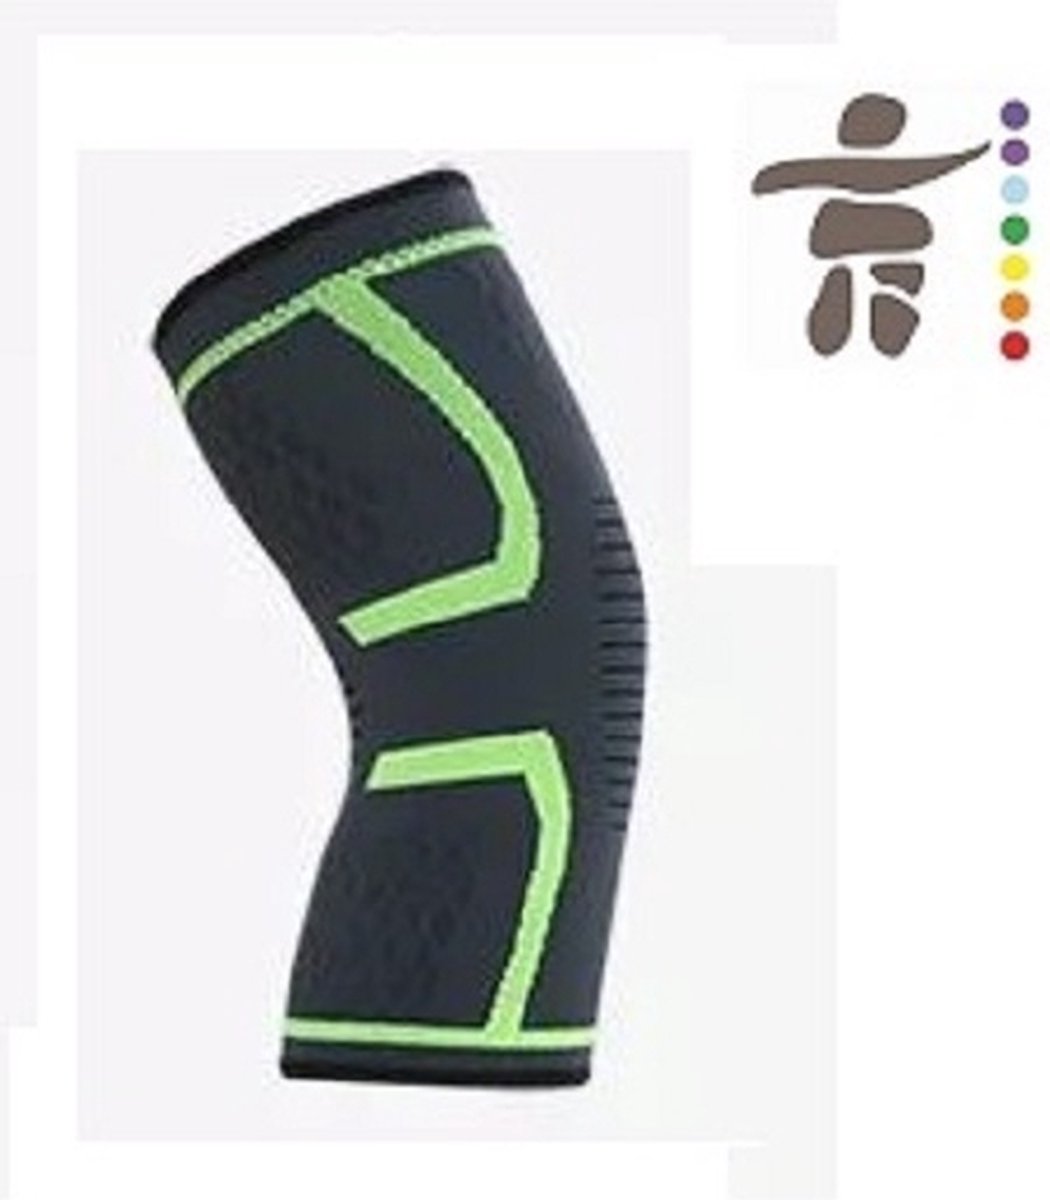 Elastische Knieband Kniebrace - Zwart met groene Rand - Maat M - verkrijgbaar in S/M/L/XL check de maattabel - Strak en Comfortabele steun - Knie compressie - Steun kniebanden - kniebescherming - Elastisch kous voor om je knie